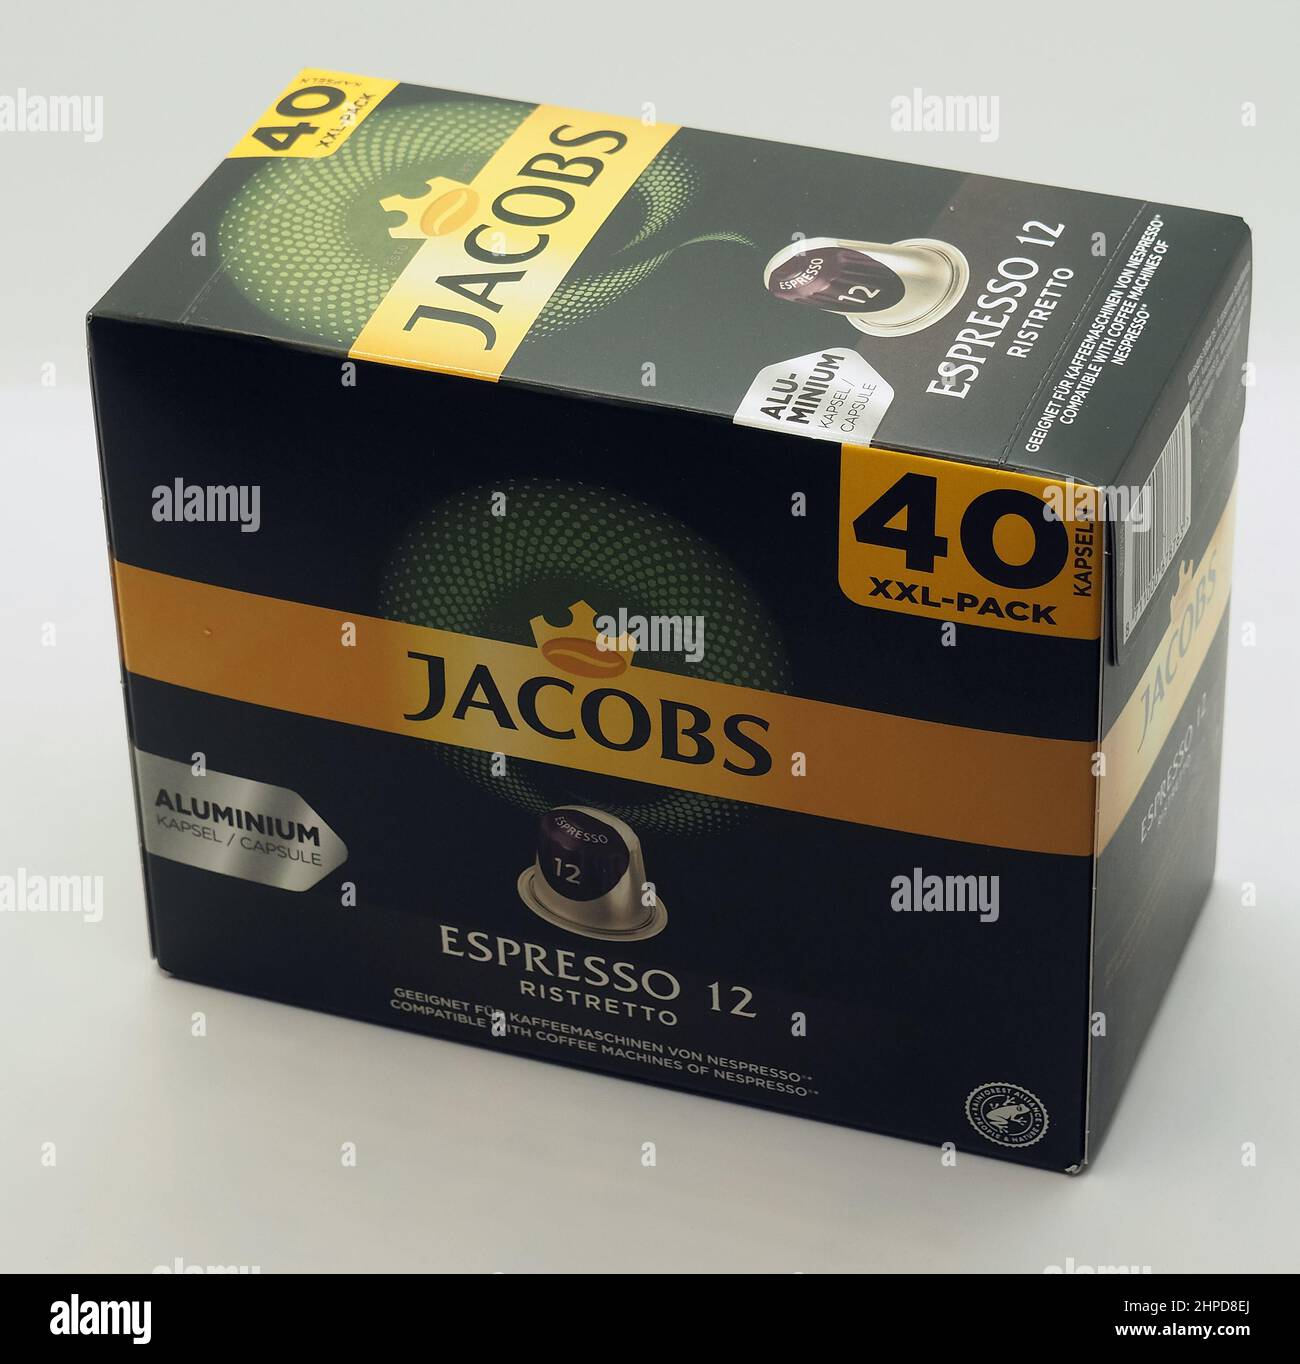 Jacobs espresso café, est une marque de café qui remonte à 1895 en Allemagne Banque D'Images